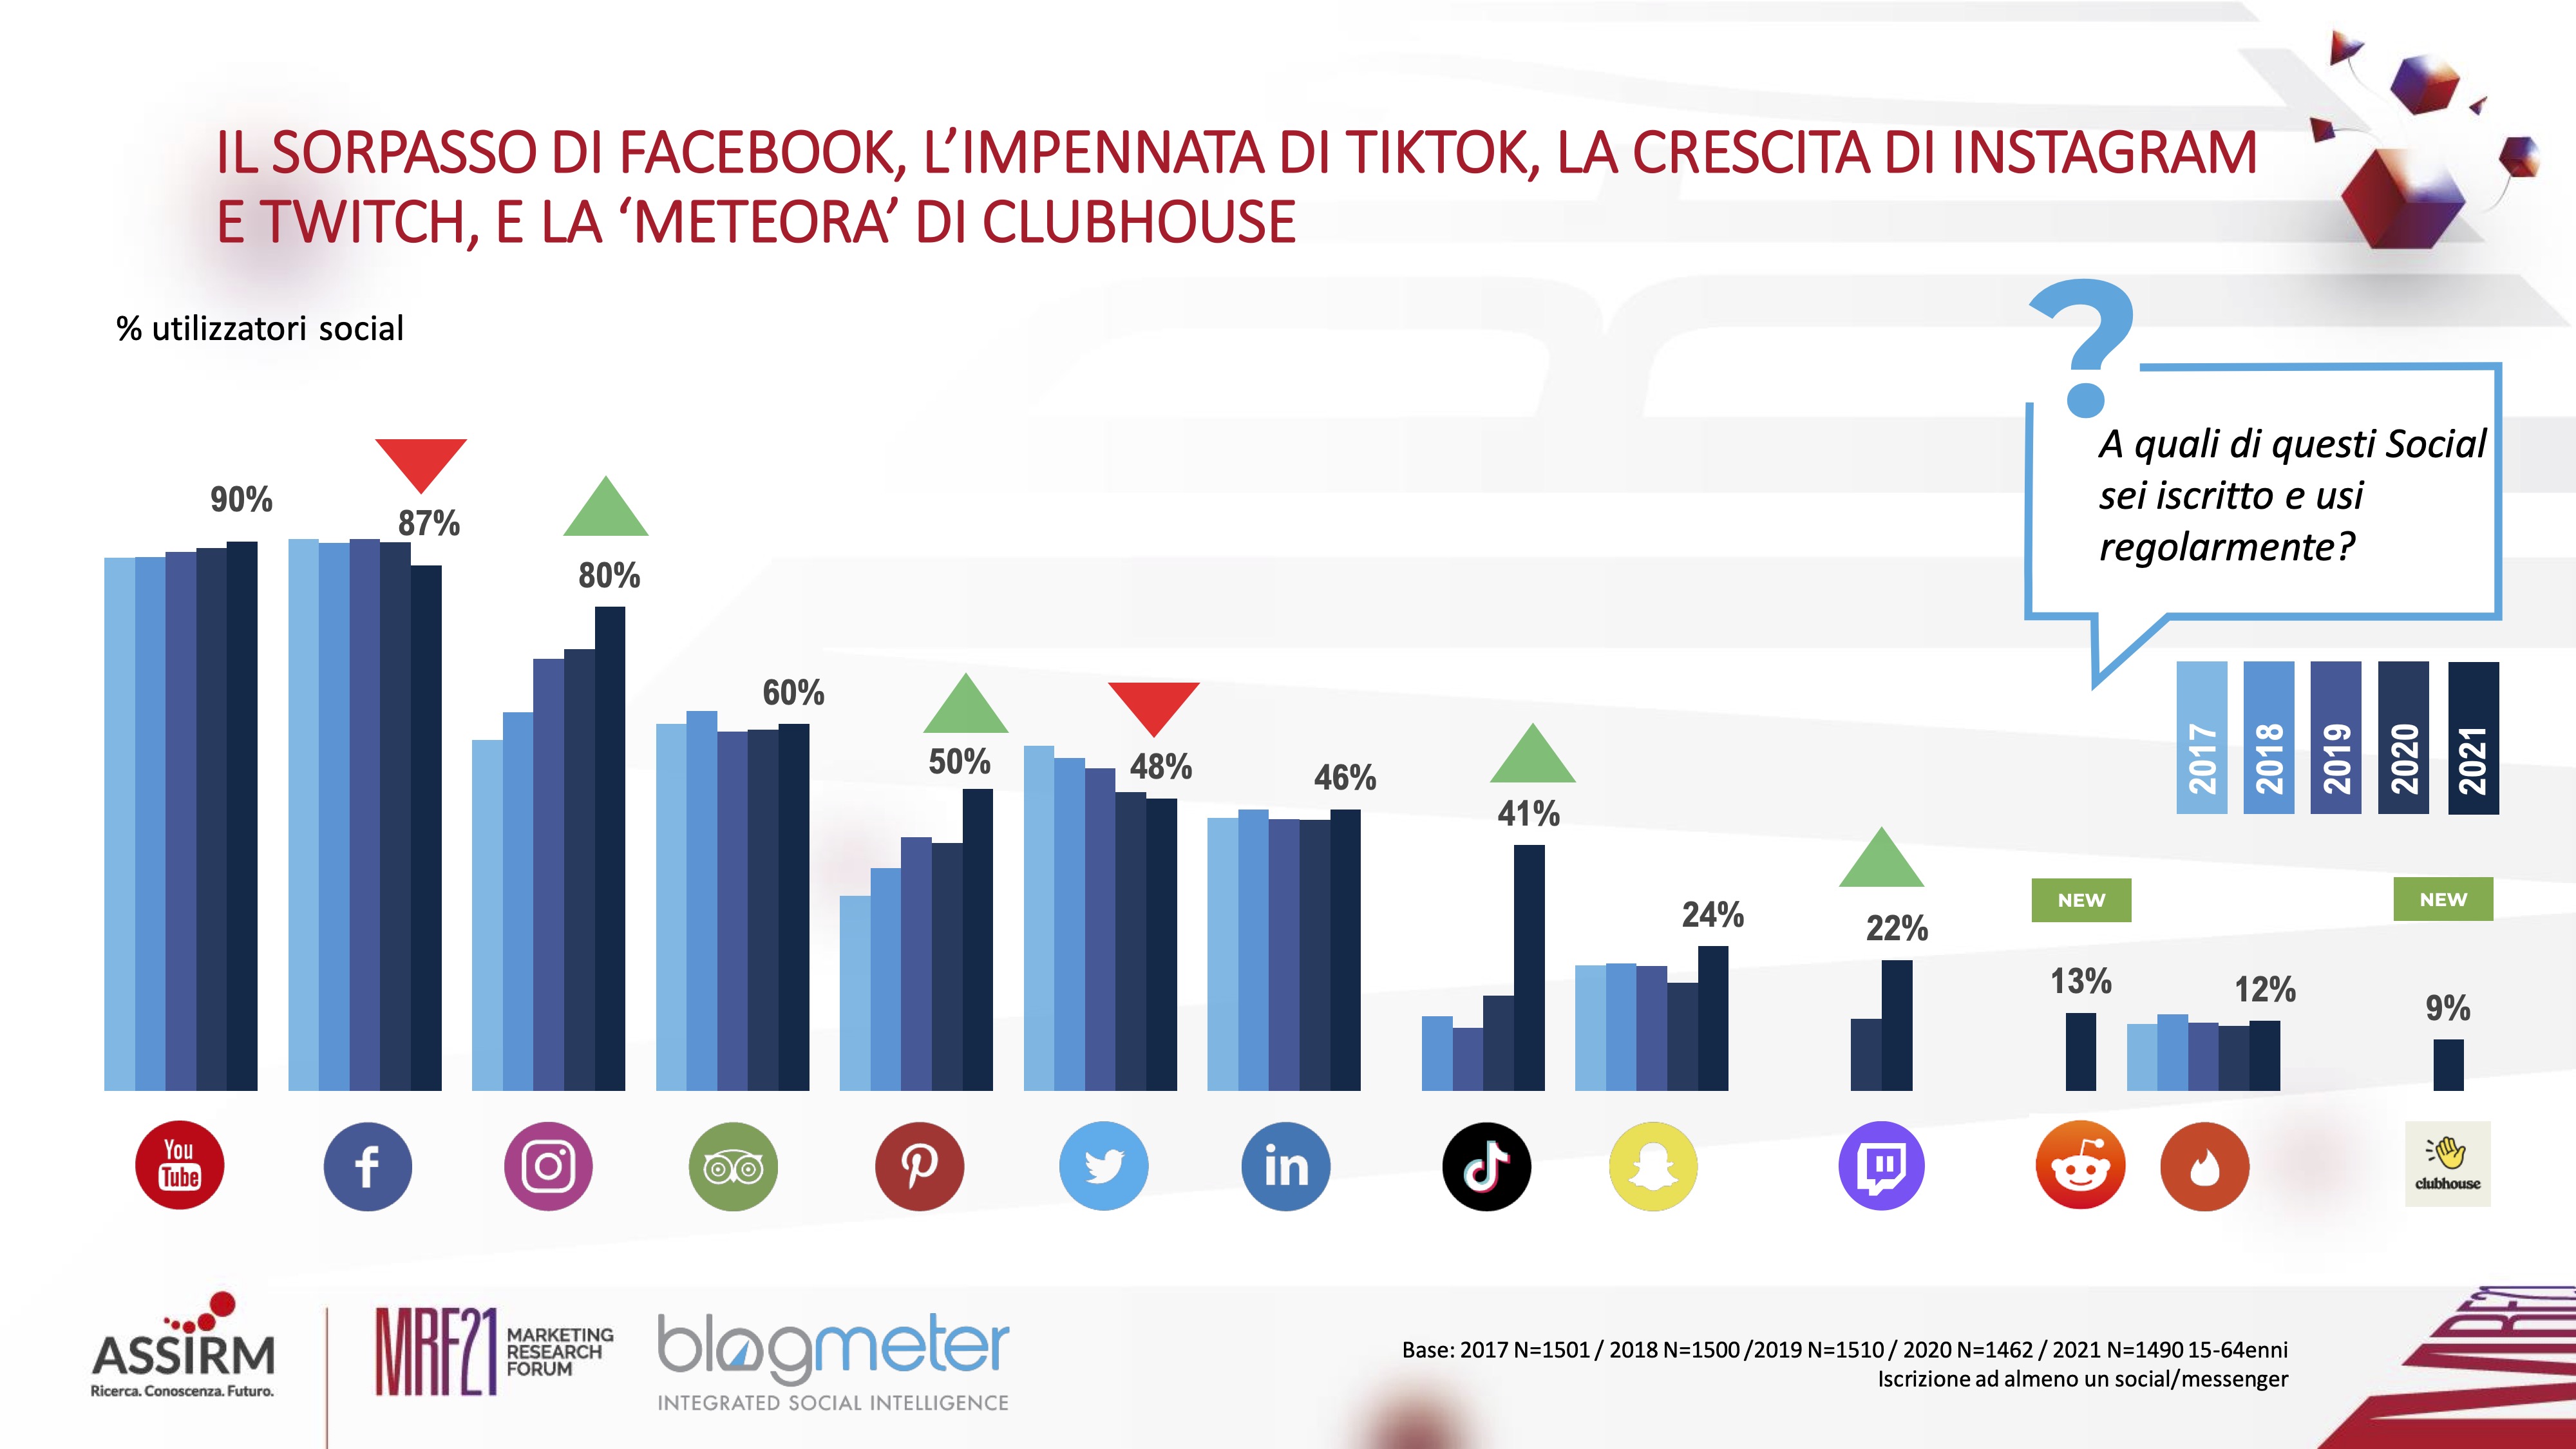 Nuovo appuntamento con “Italiani e Social Media”: la ricerca di BlogMeter giunge alla quinta edizione